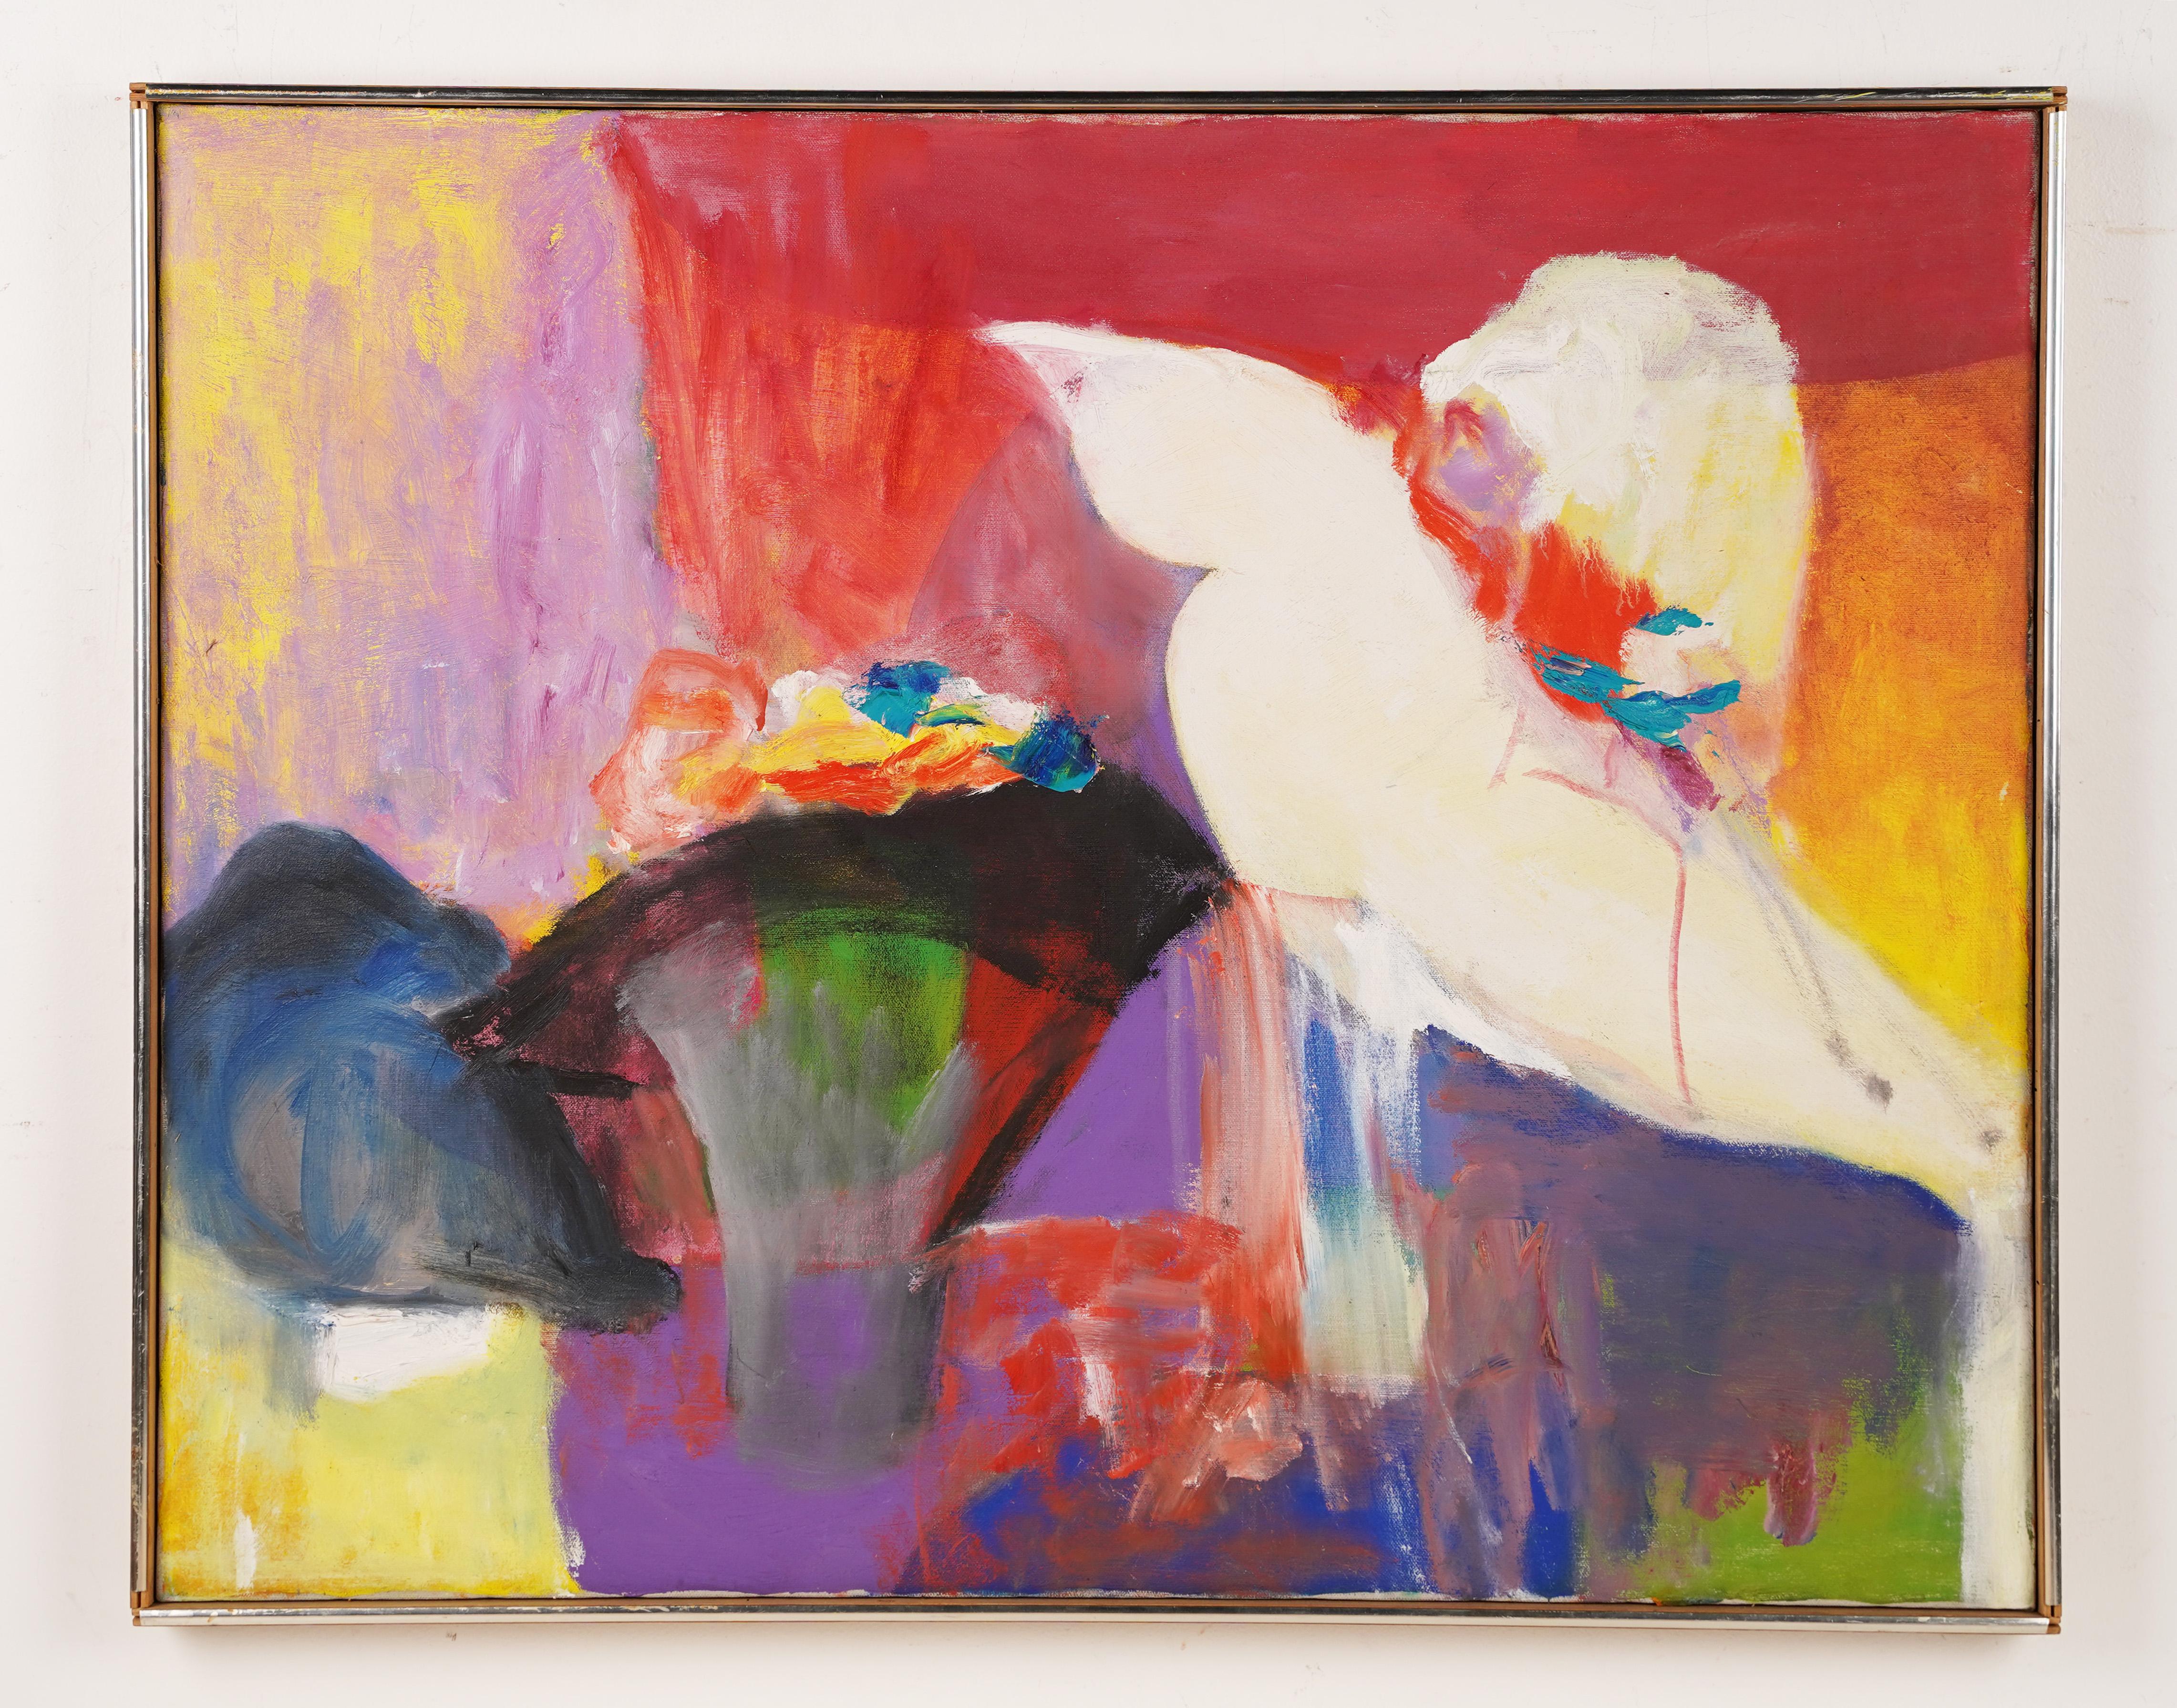 Antikes abstrakt-expressionistisches Ölgemälde, Hut Shop, amerikanische Schule, Brillant  (Abstrakter Expressionismus), Painting, von Unknown